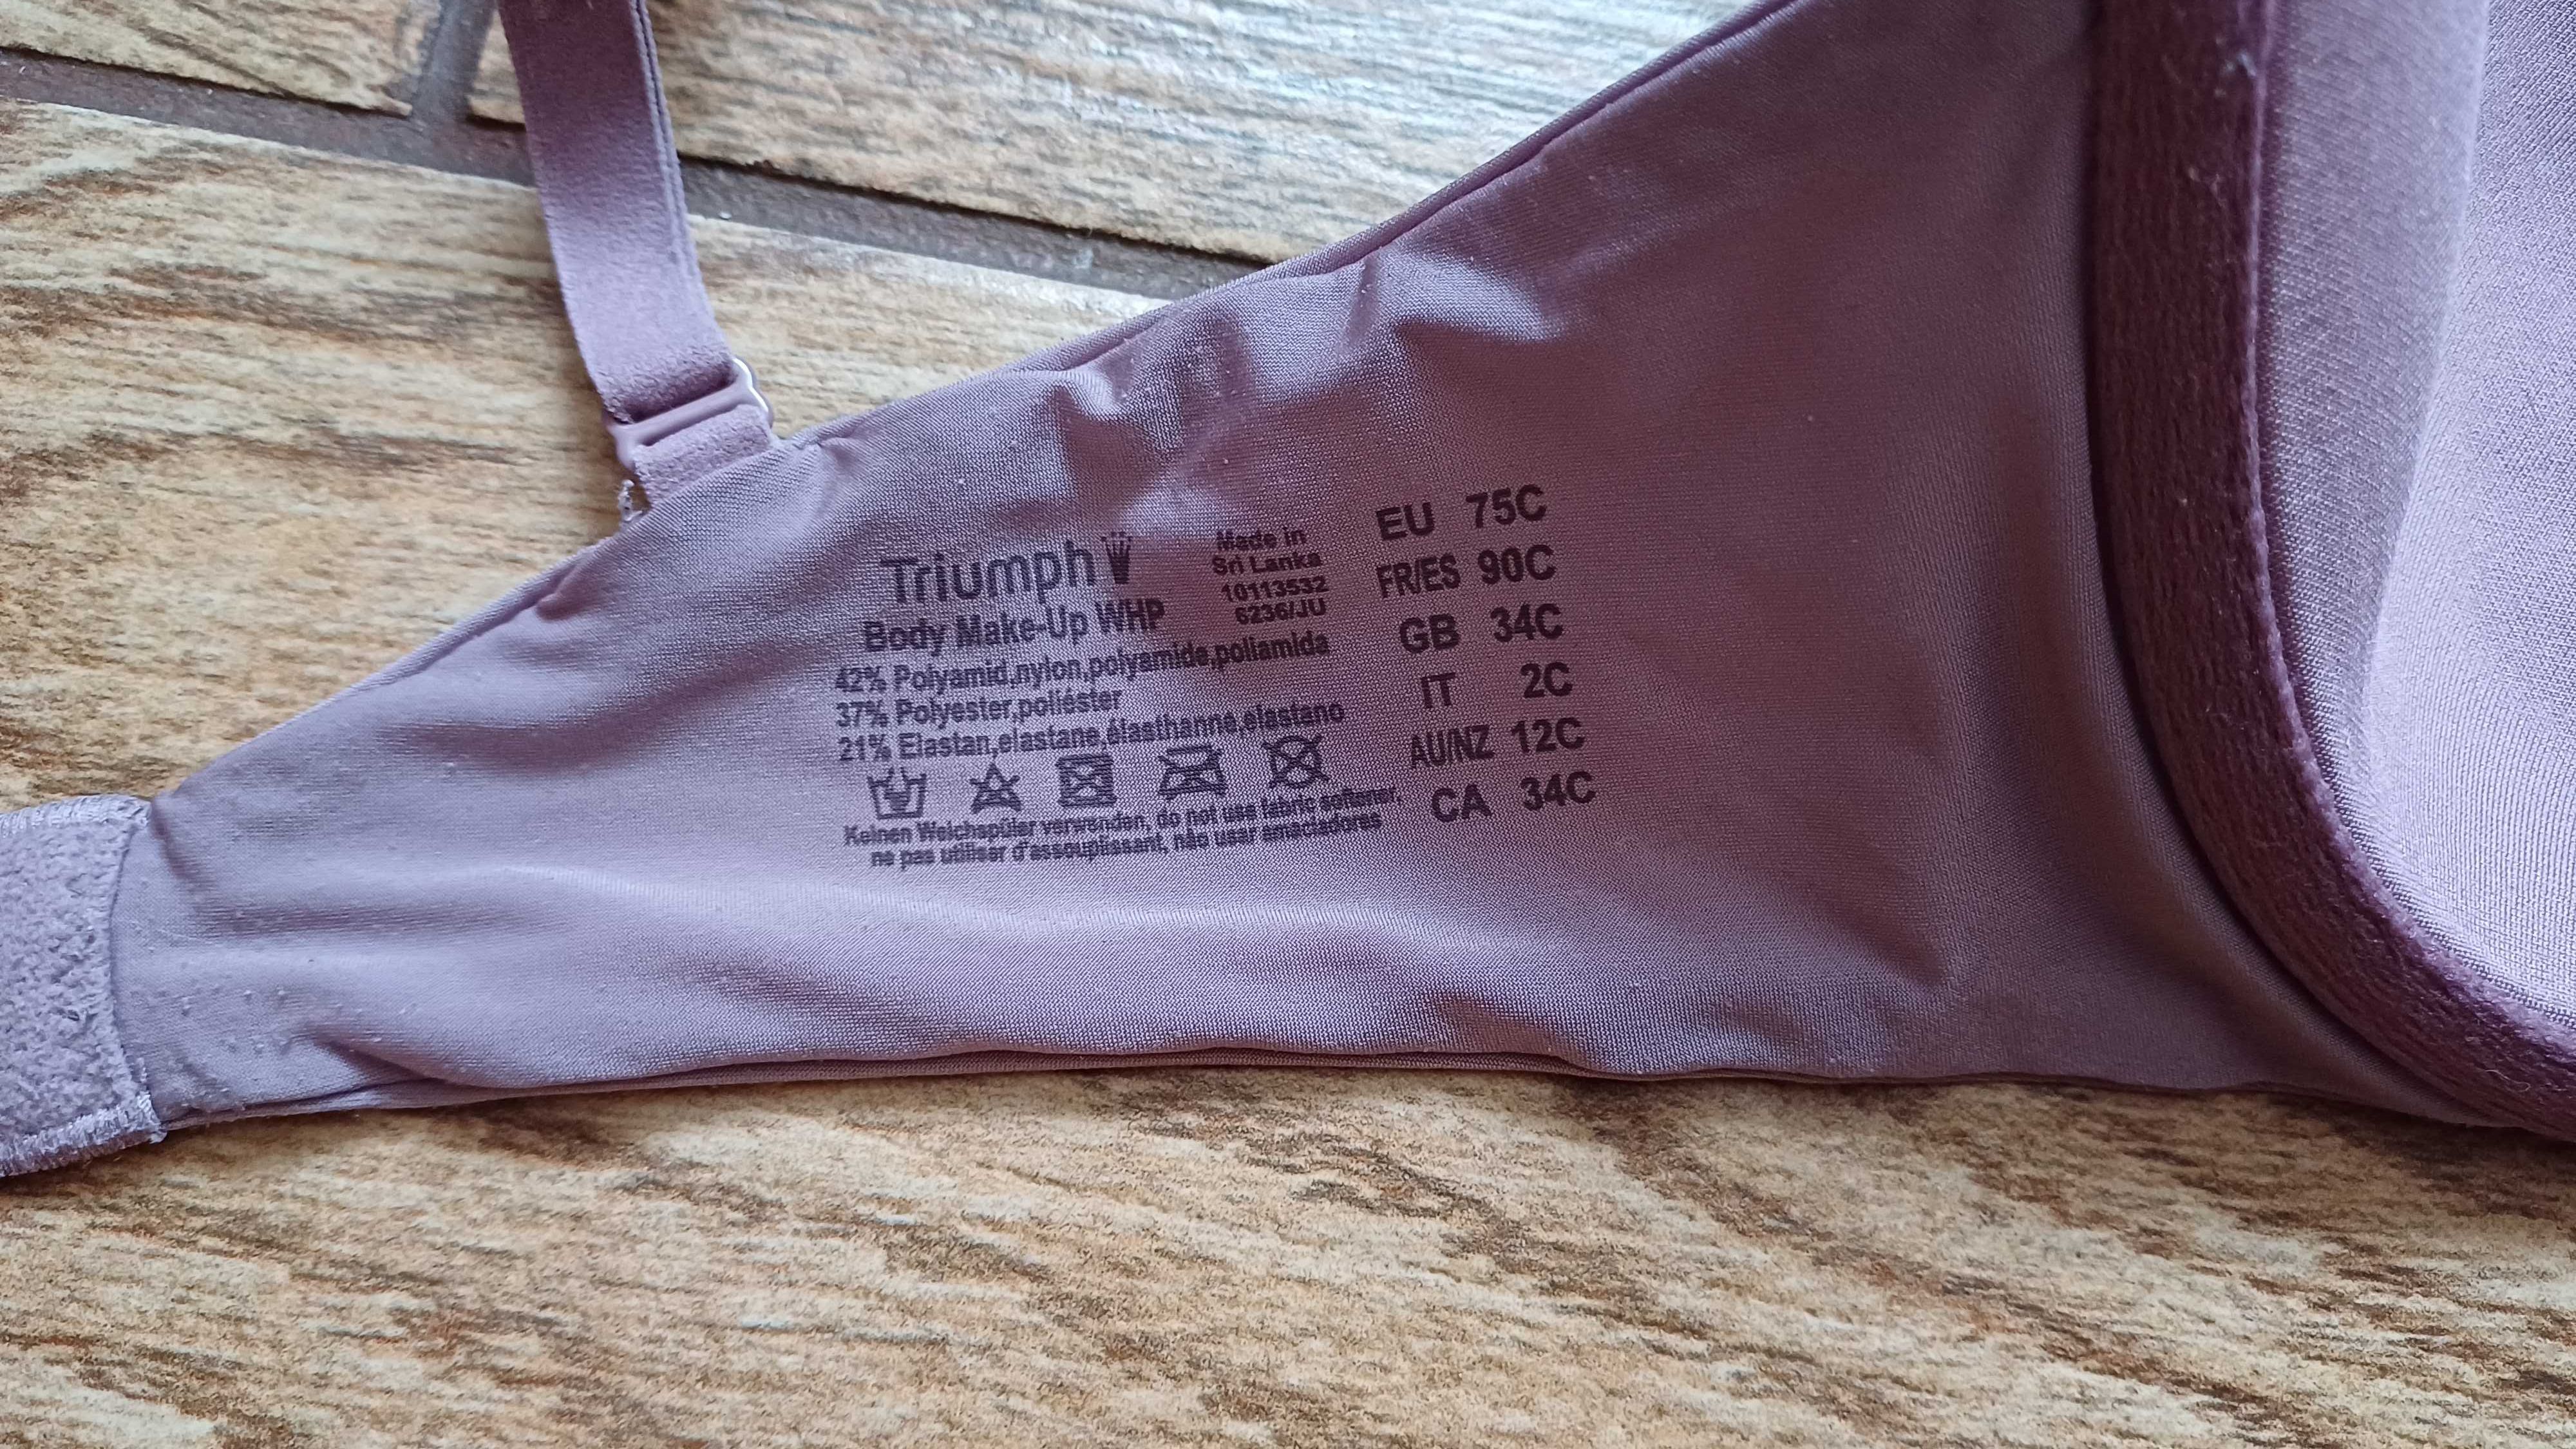 Fioletowy# liliowy biustonosz Triumph Body Make Up WHP r. 75 C